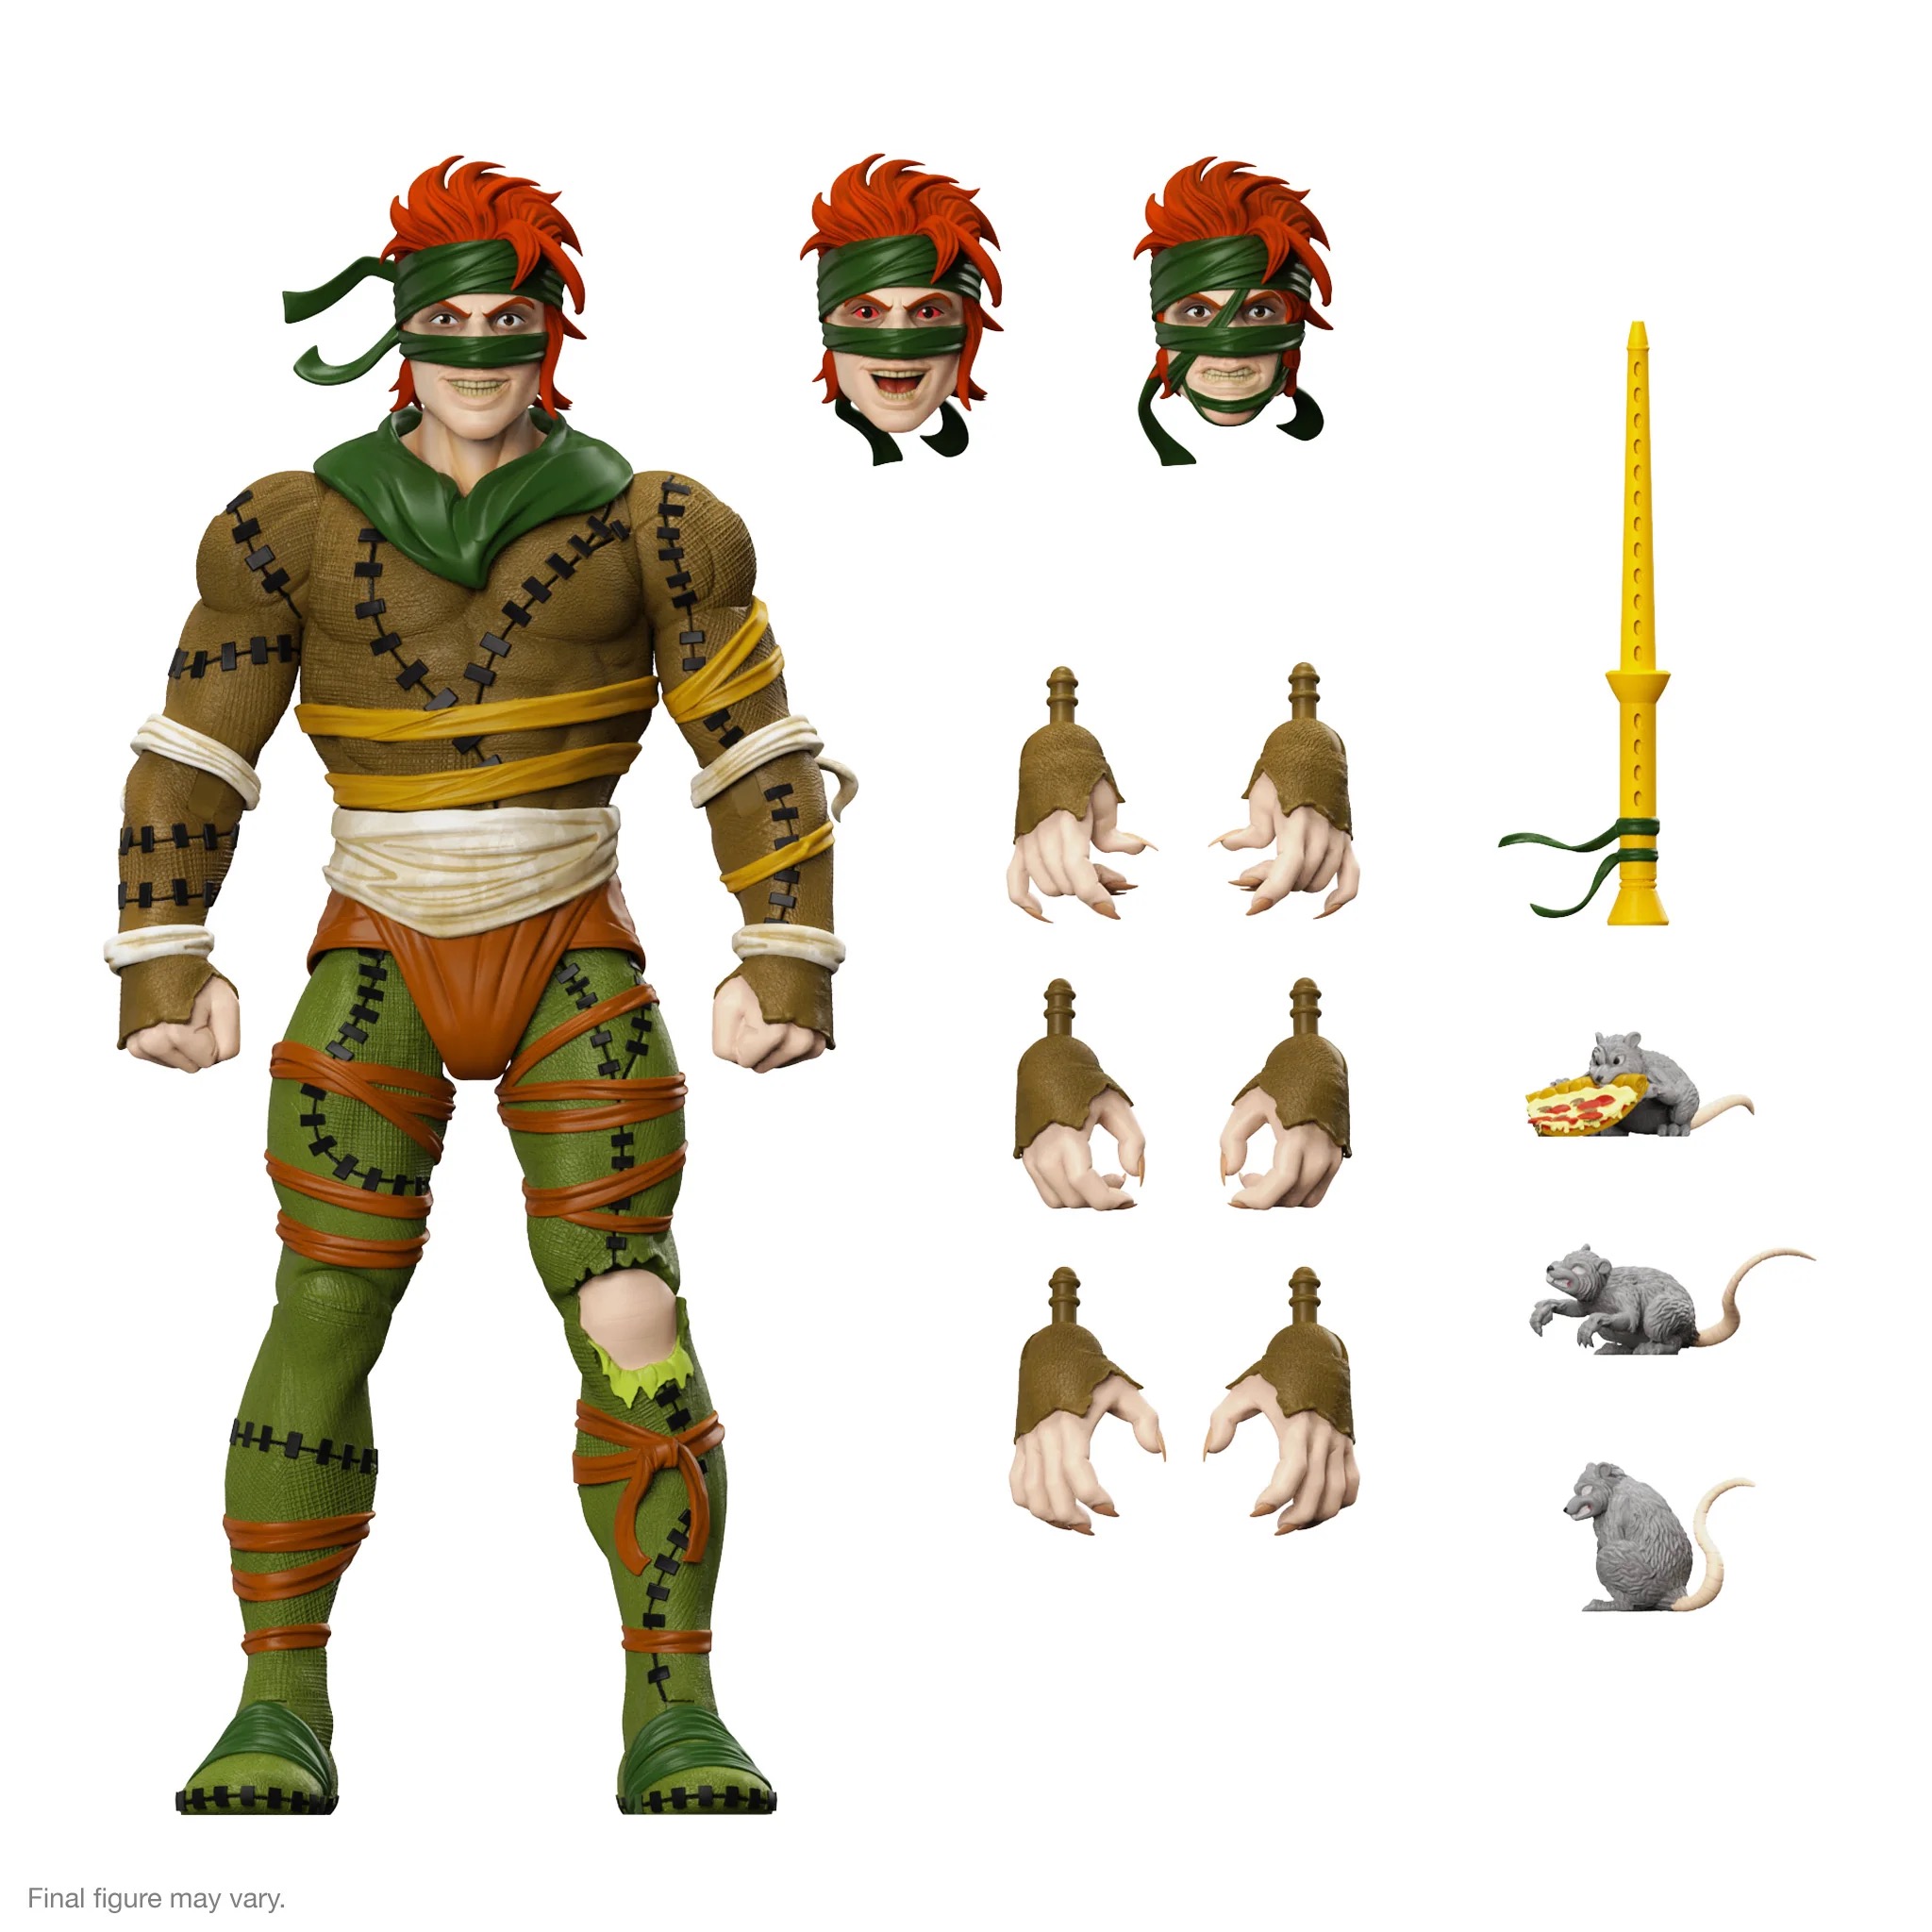 Teenage Mutant Ninja Turtles Super7 Rat King (Ultimates)